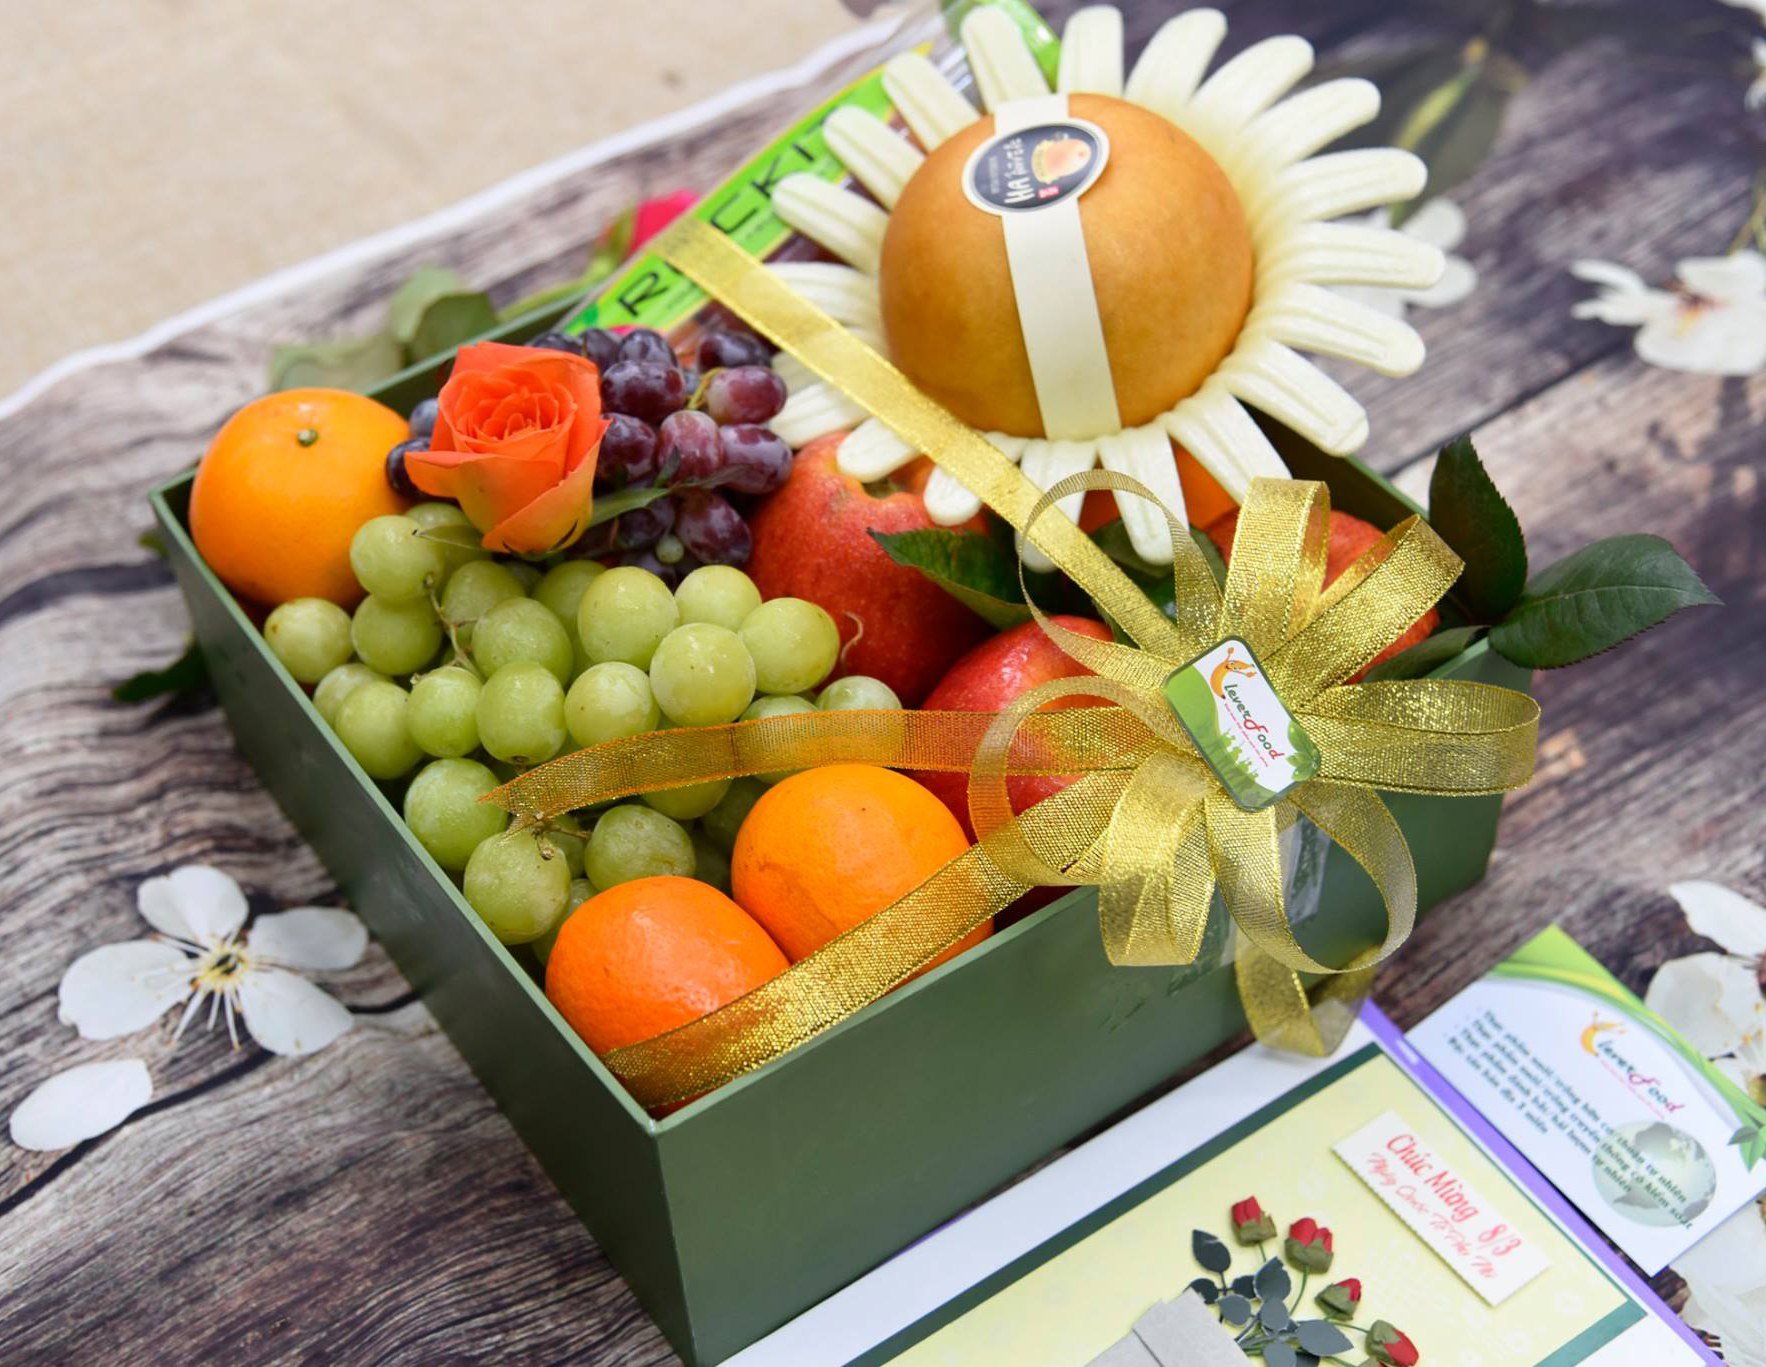 Gio hoa quả đầy đủ các loại trái cây sẽ là món quà tuyệt vời để tặng thầy cô